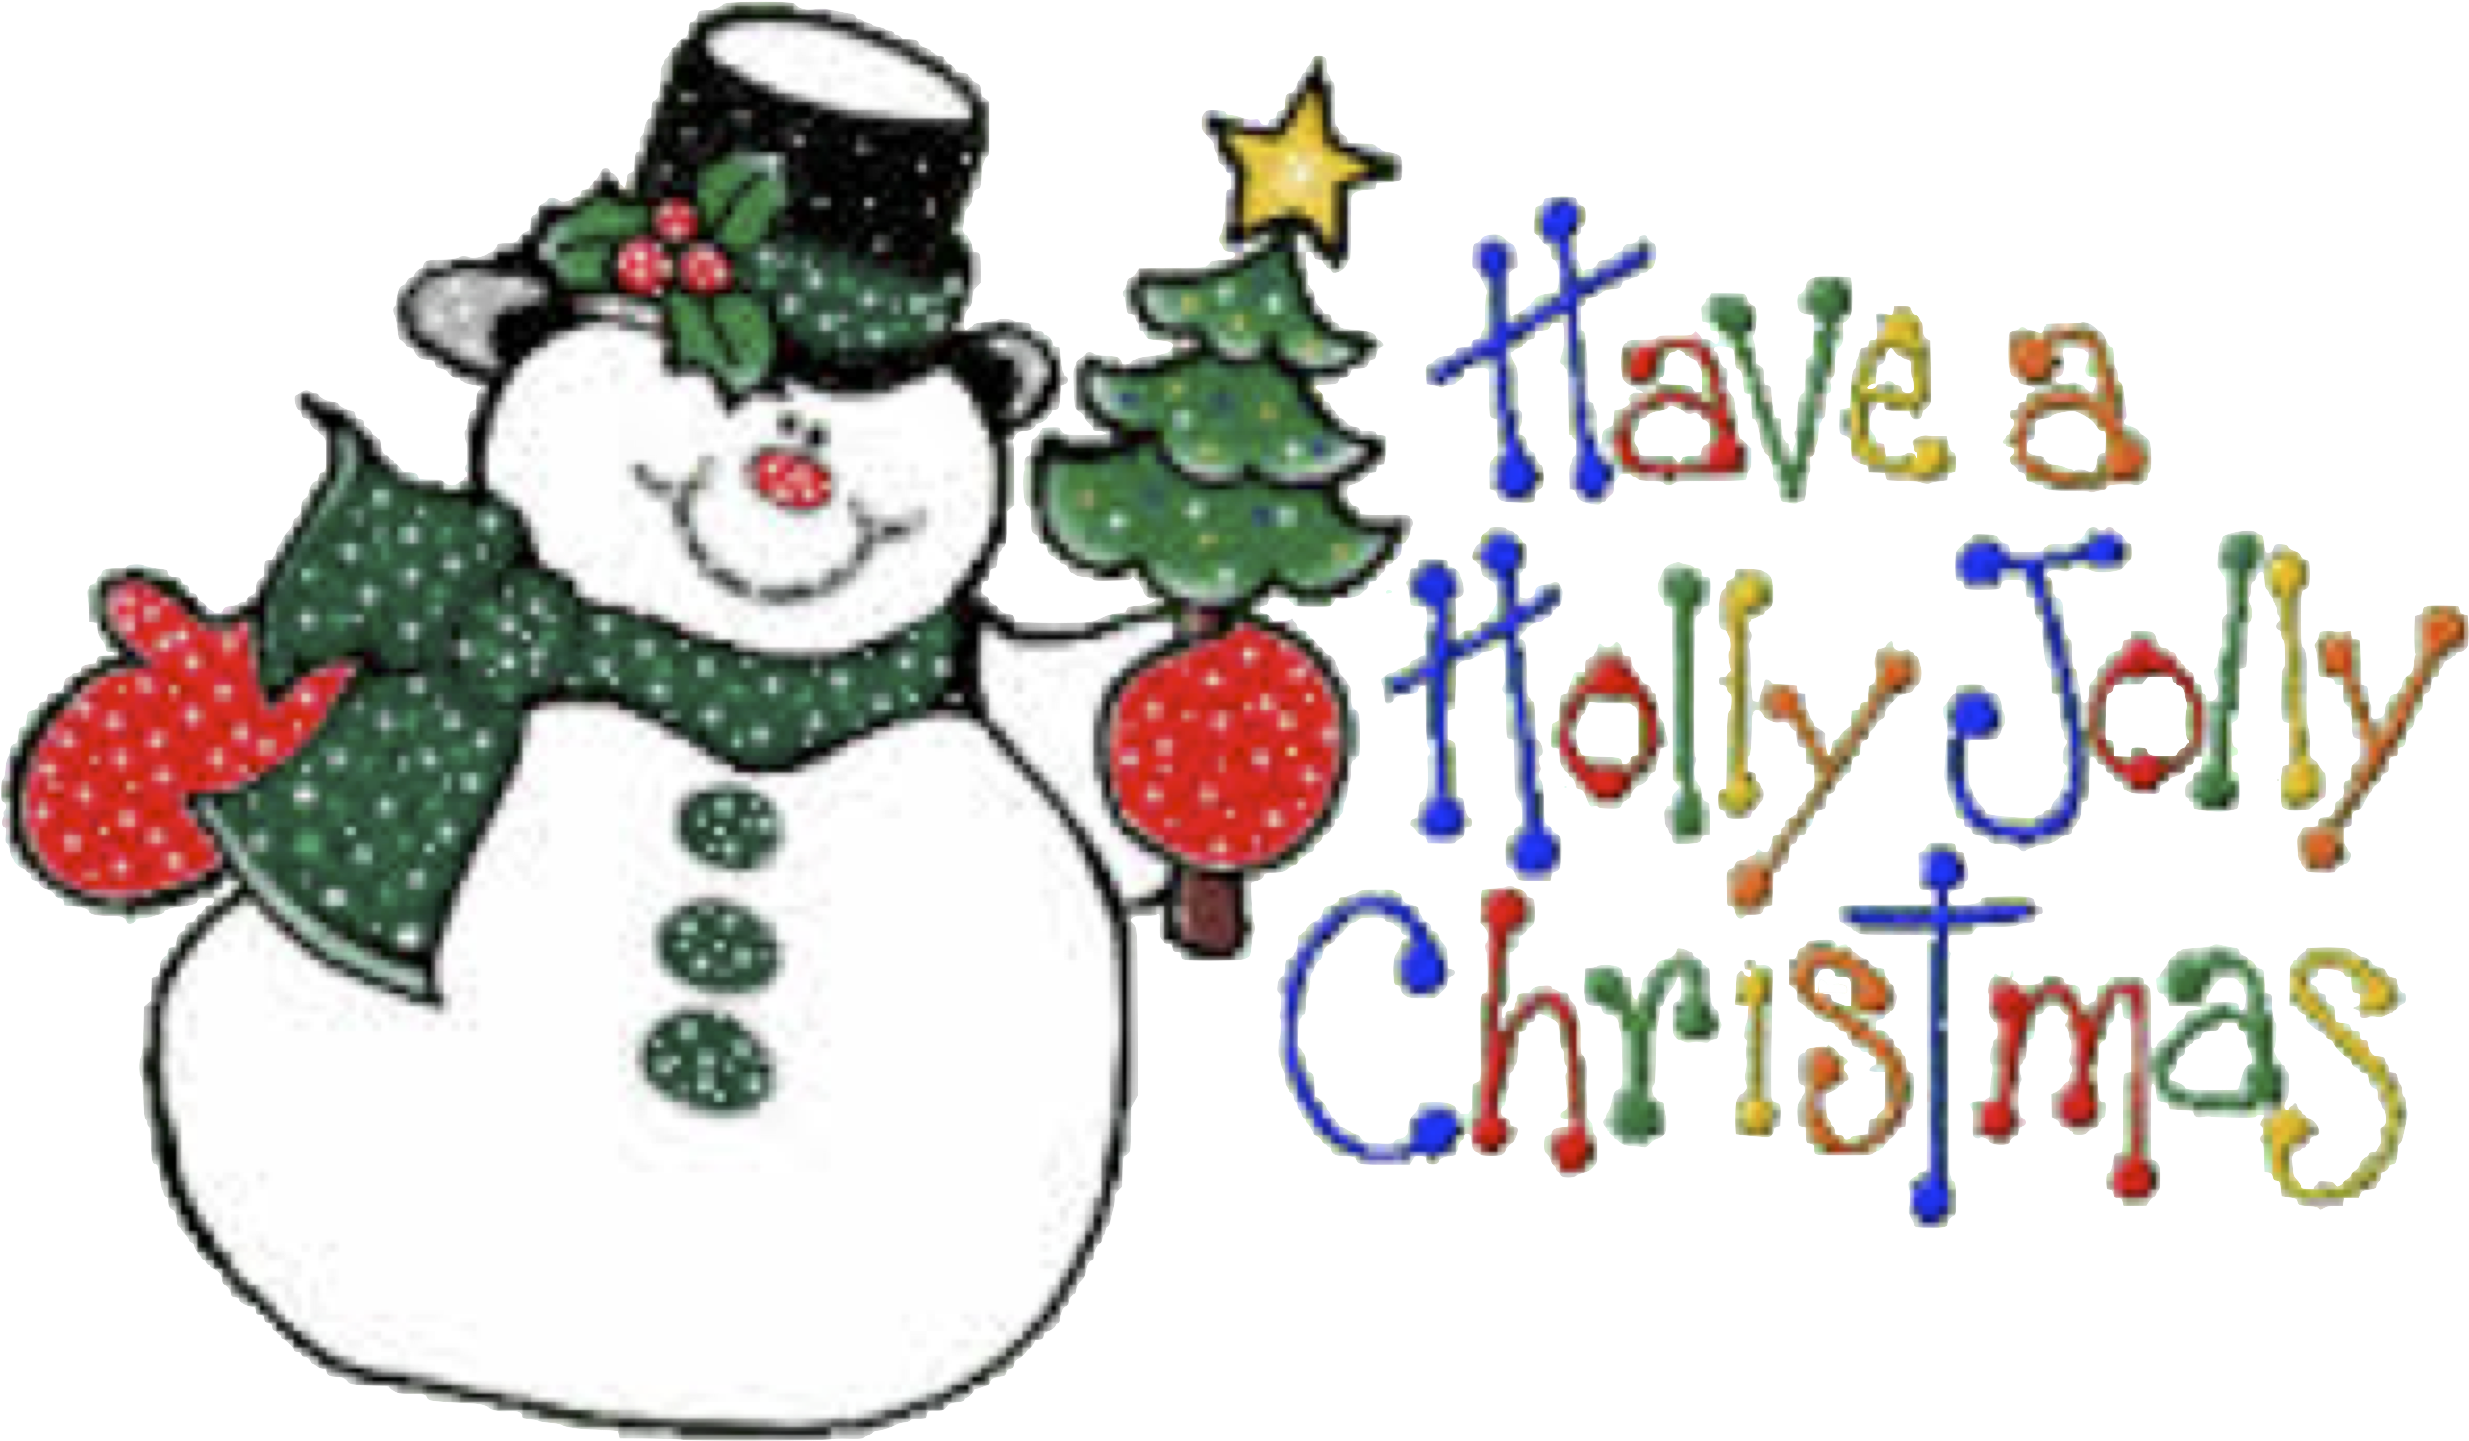 Snowman - Have A Holly Jolly Christmas (2595x1512)